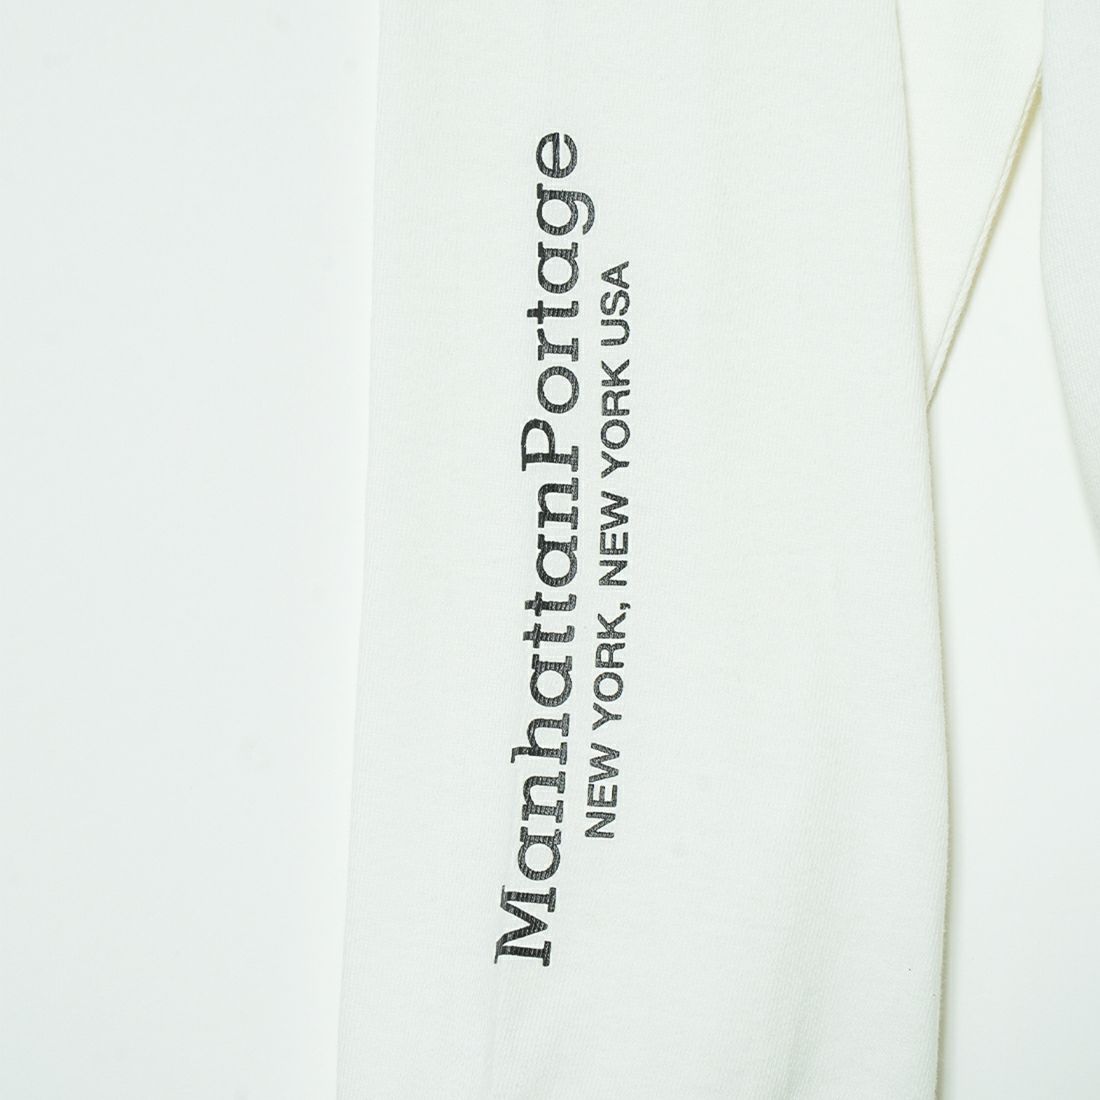 MANHATTAN PORTAGE [マンハッタンポーテージ] ロングスリーブプリントTシャツ [24SS-MP-M580] 01 WHITE